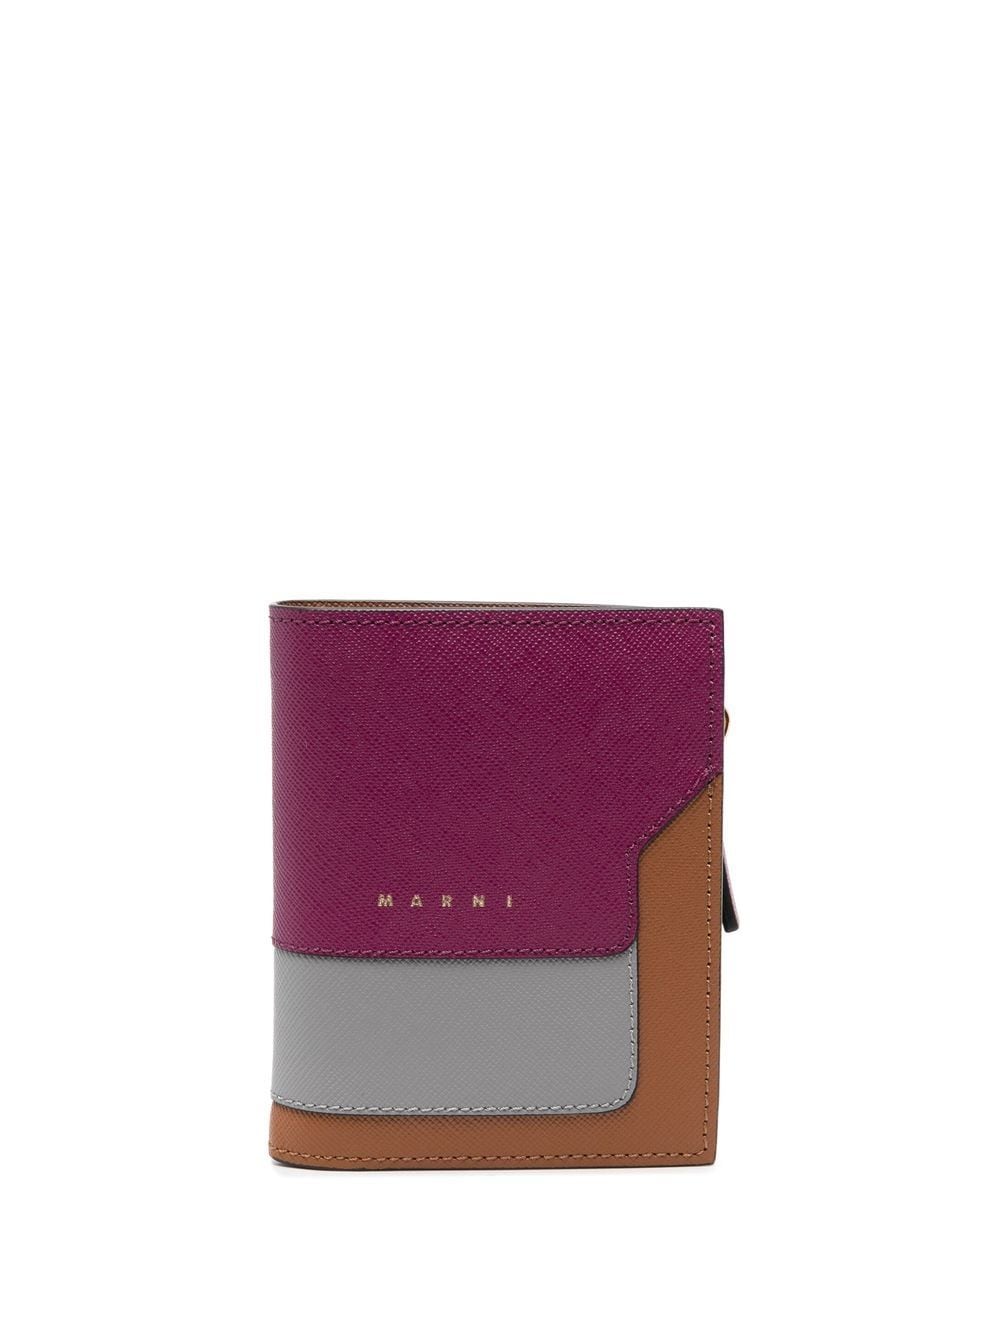 Marni colour-block leather wallet - Purple von Marni